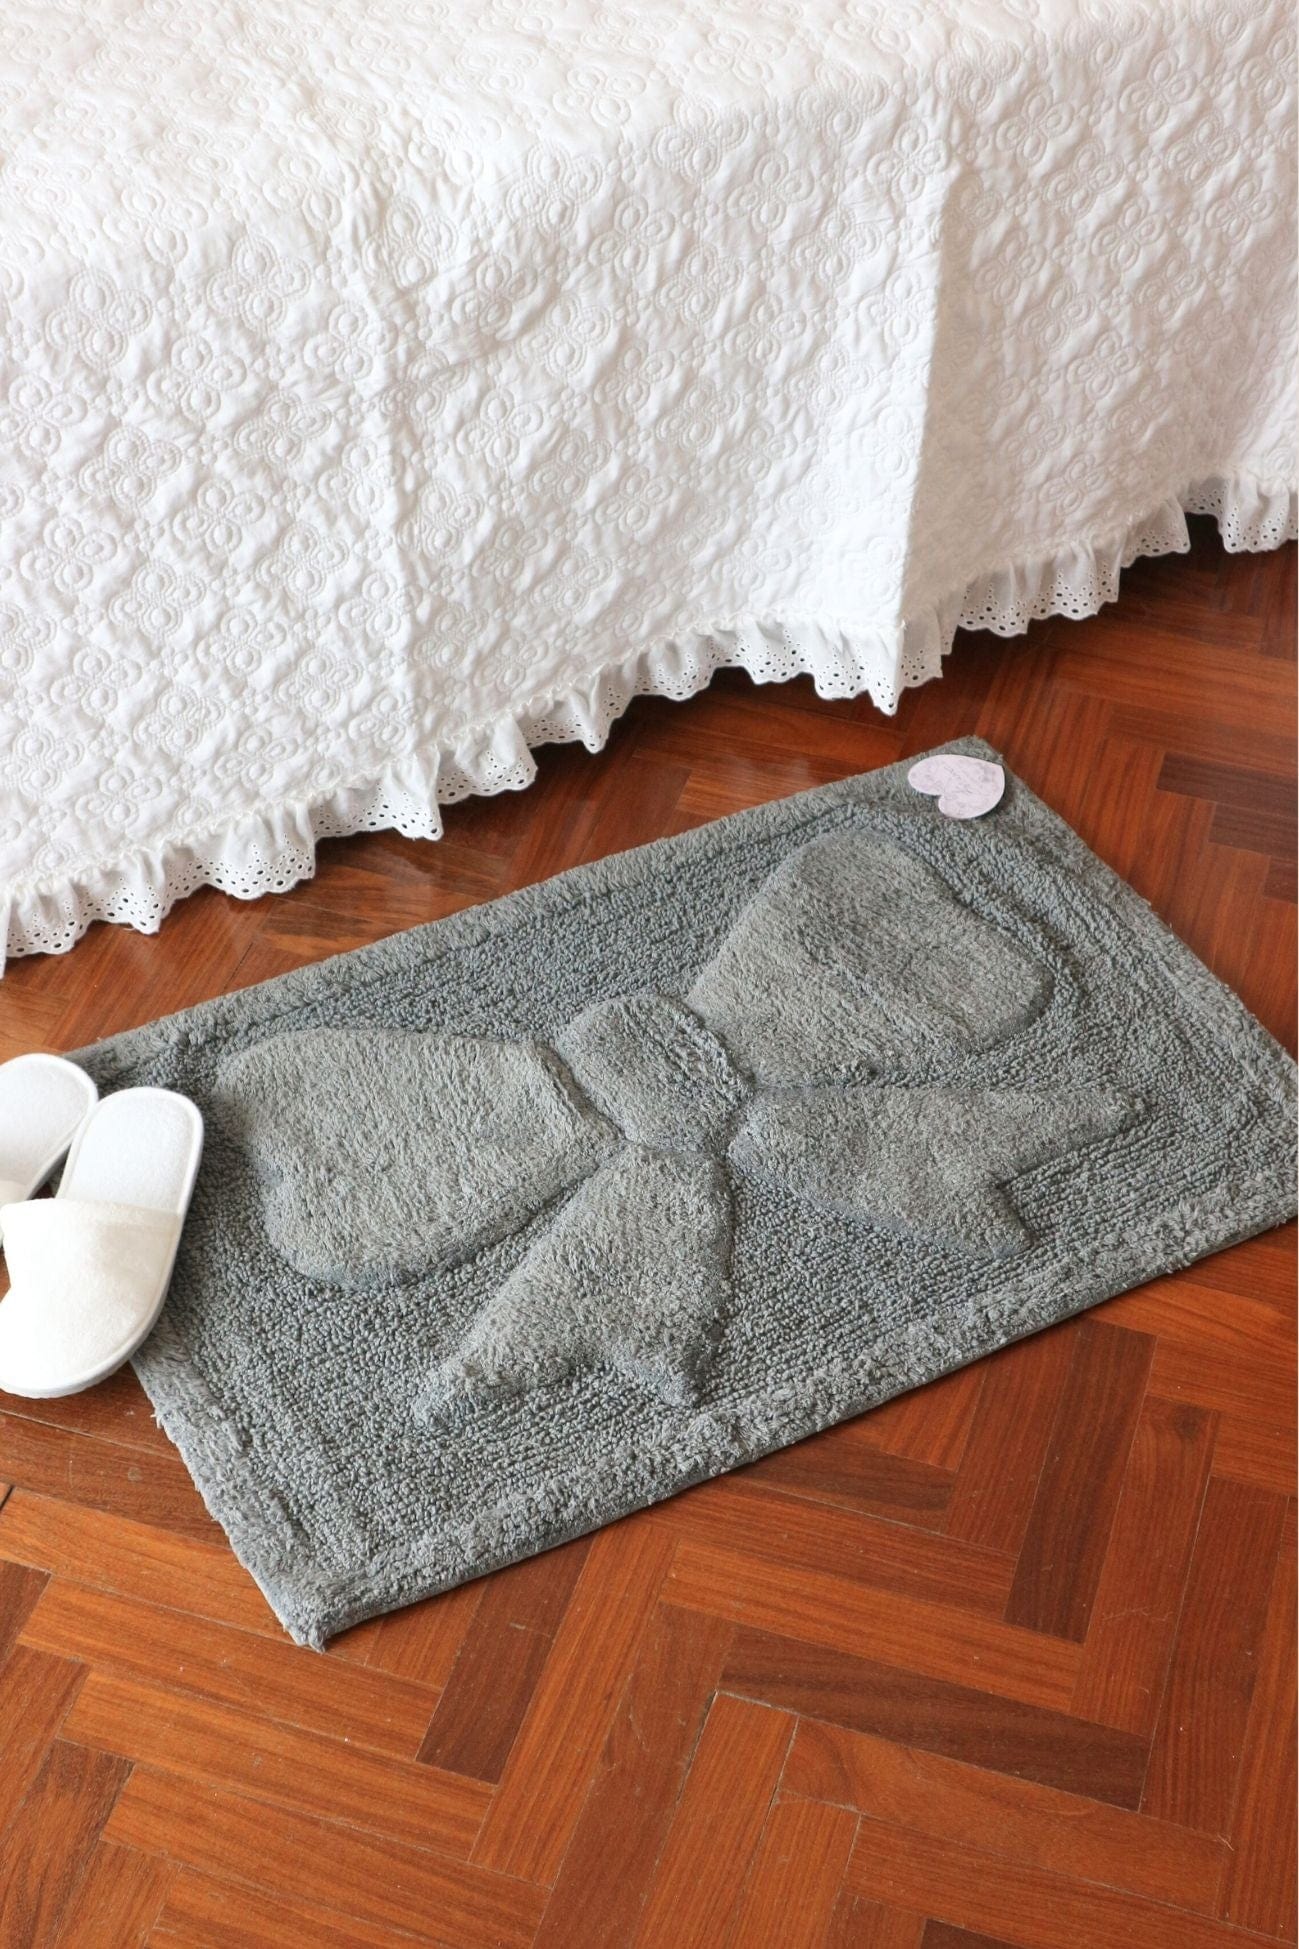 Blanc MariClo' My Soft Dream My Soft Dream - Tappeto in cotone con fiocco in stile Shabby Chic 80x50 | Blanc MariClo'